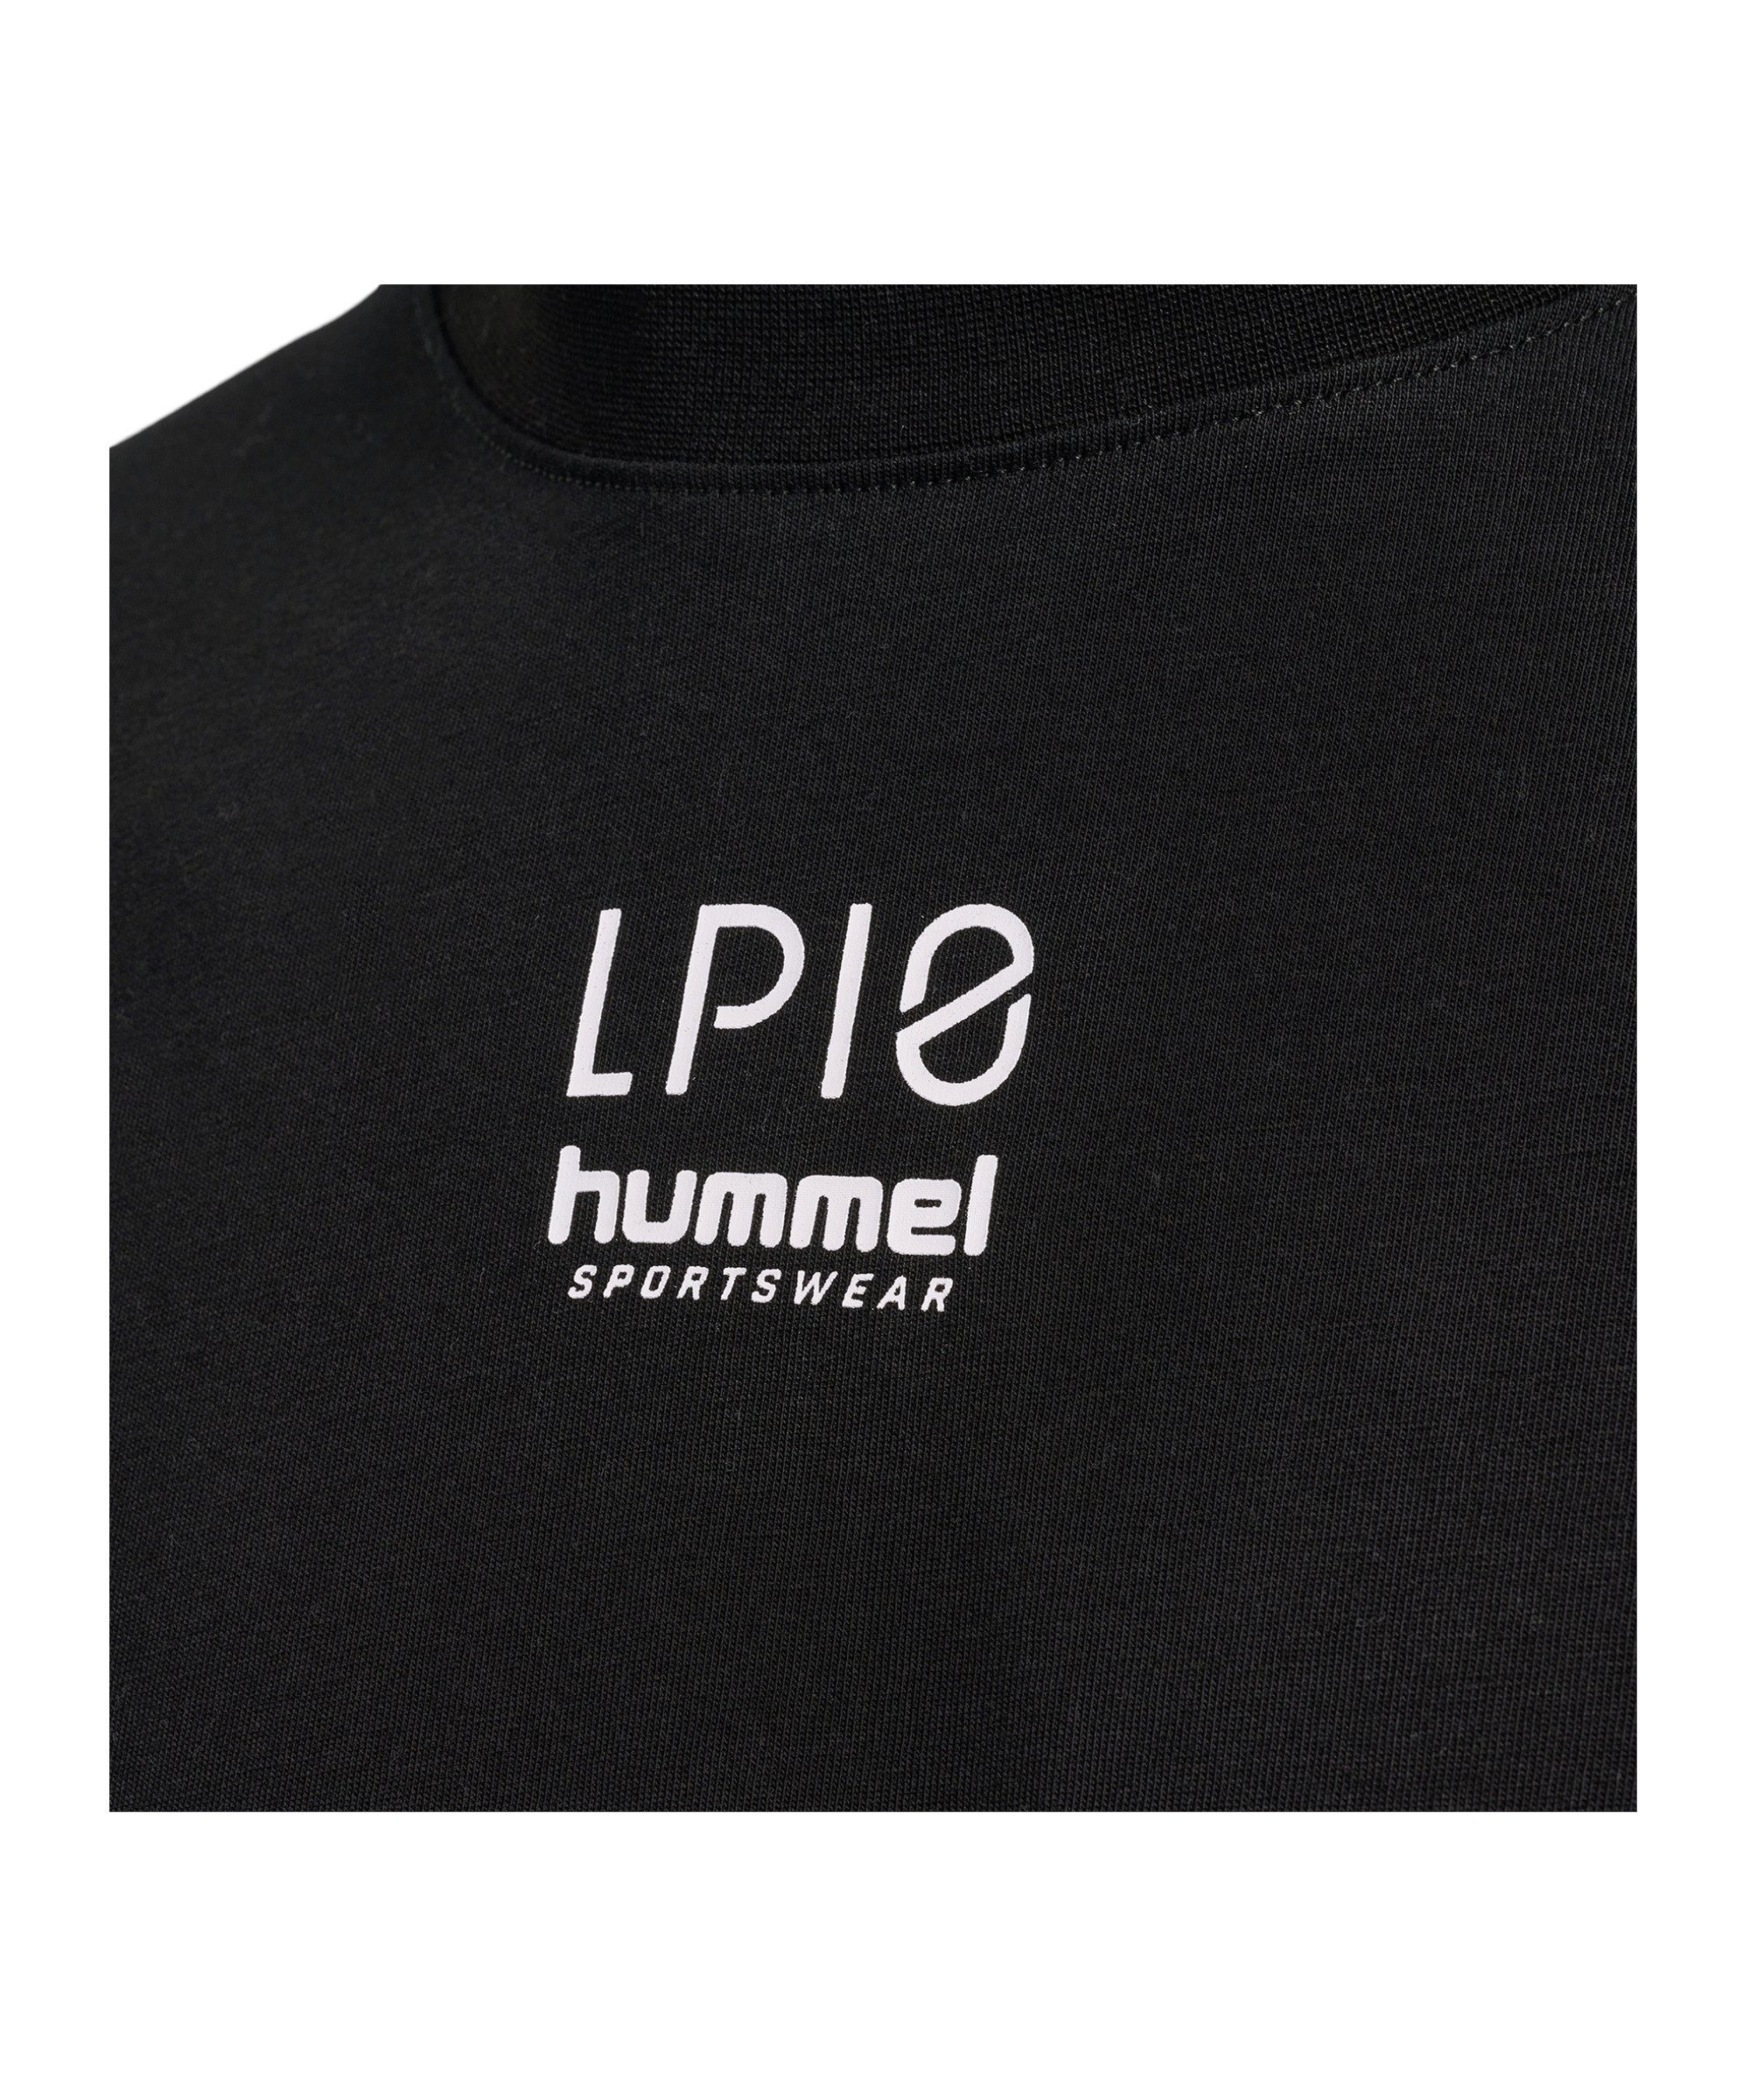 T-Shirt T-Shirt default hmlLP10 schwarz hummel Boxy